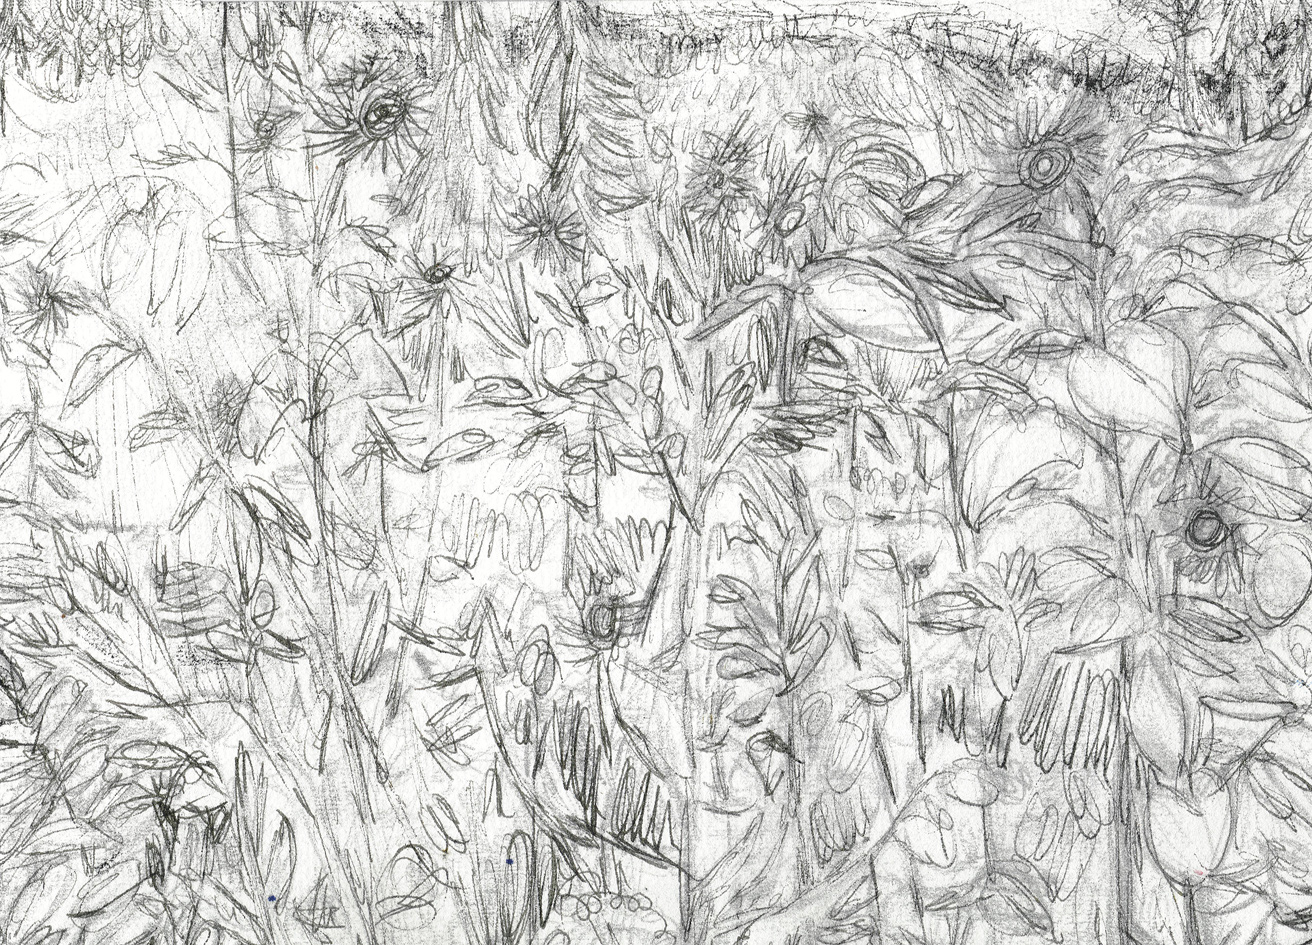 sunflowers in beek (drawing by franka waaldijk)